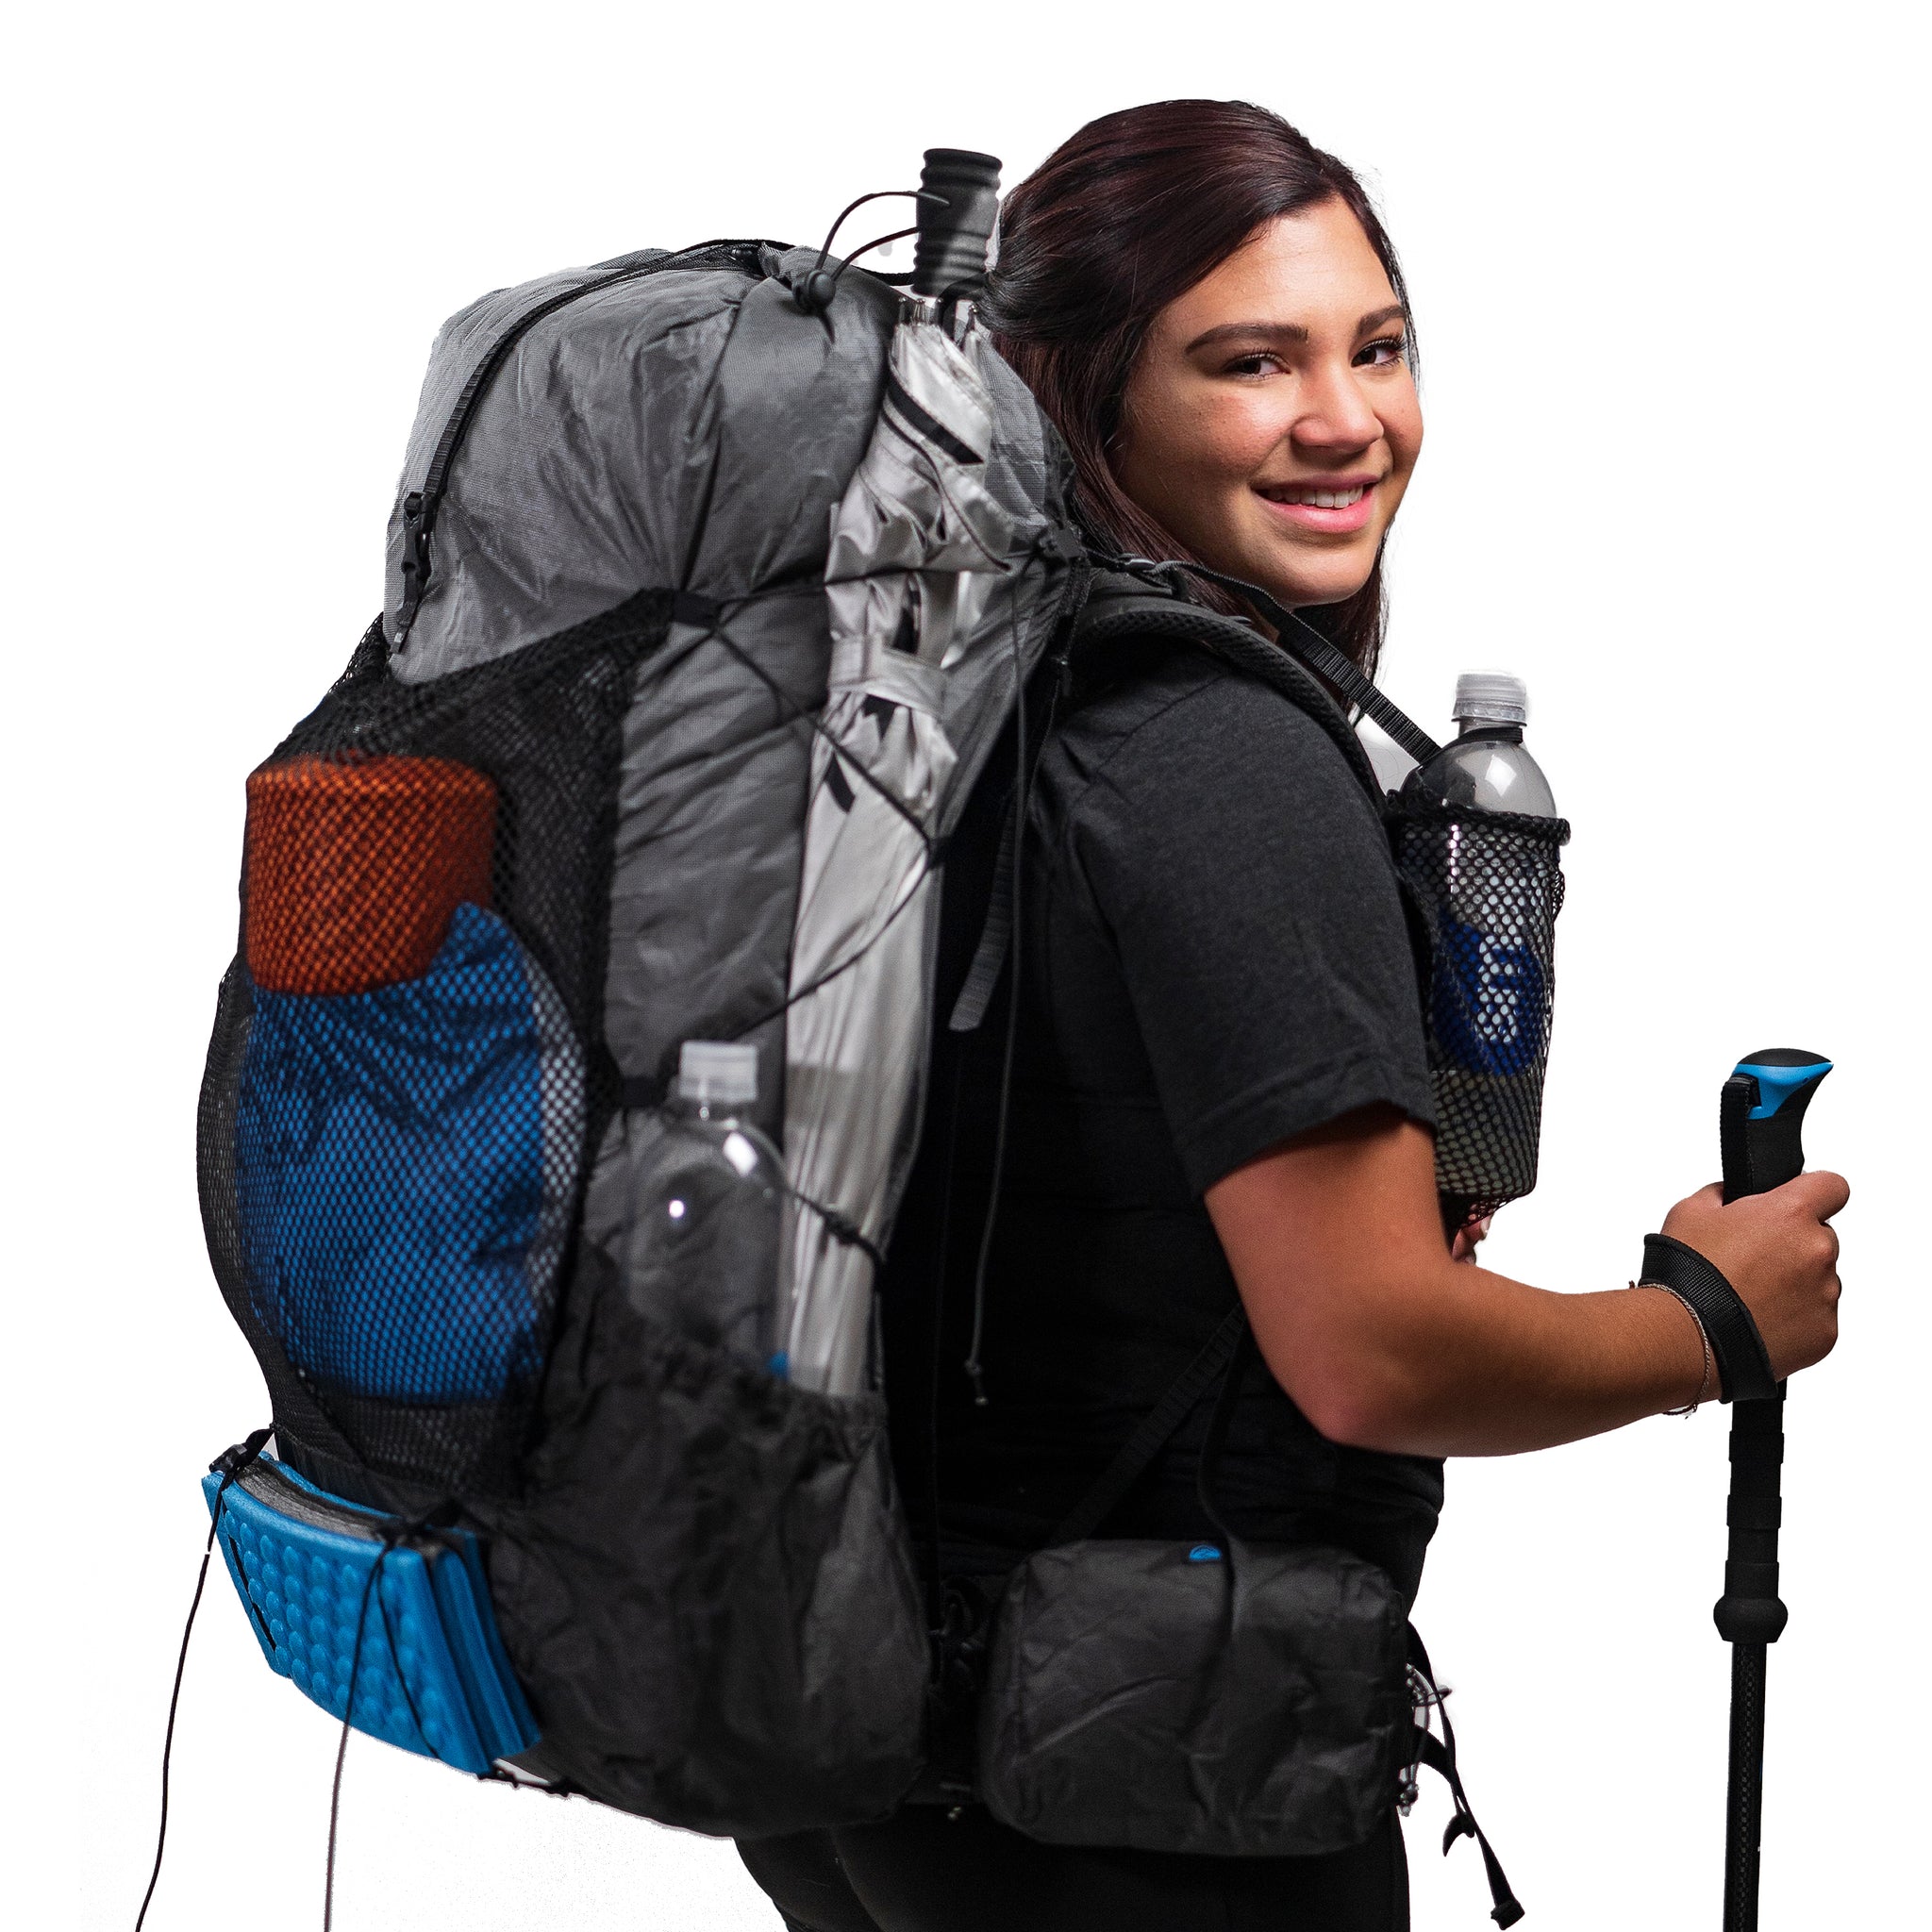 Arc Zip Ultra 62L - UL Hiking Backpack